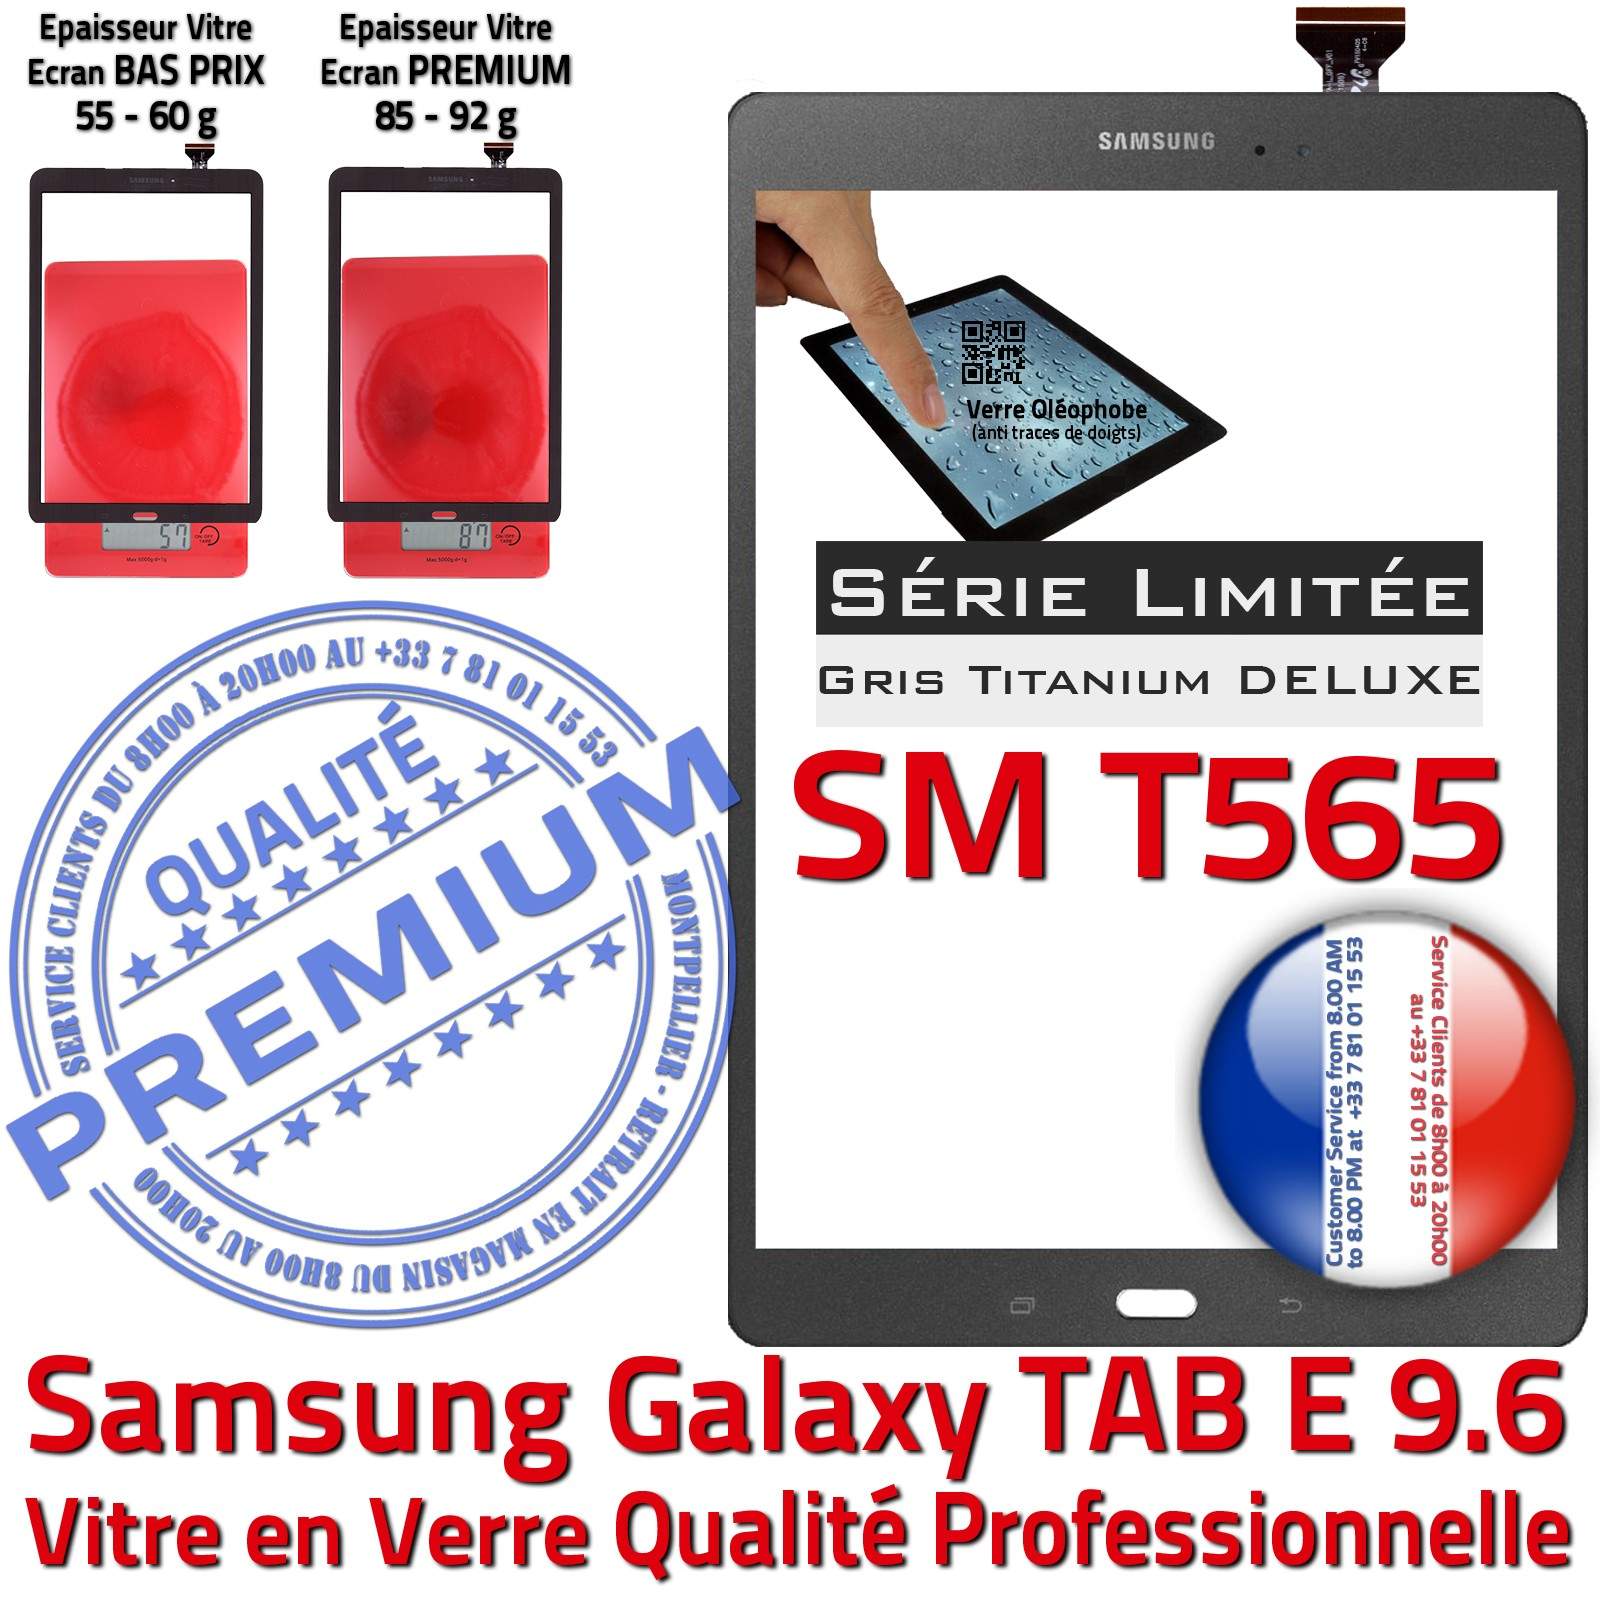 Vitre Tactile Grise Verre Samsung Galaxy TAB-E SM-T565 9.6 Assemblée Adhésif Ecran Gris Titanium Qualité PREMIUM Série Limitée